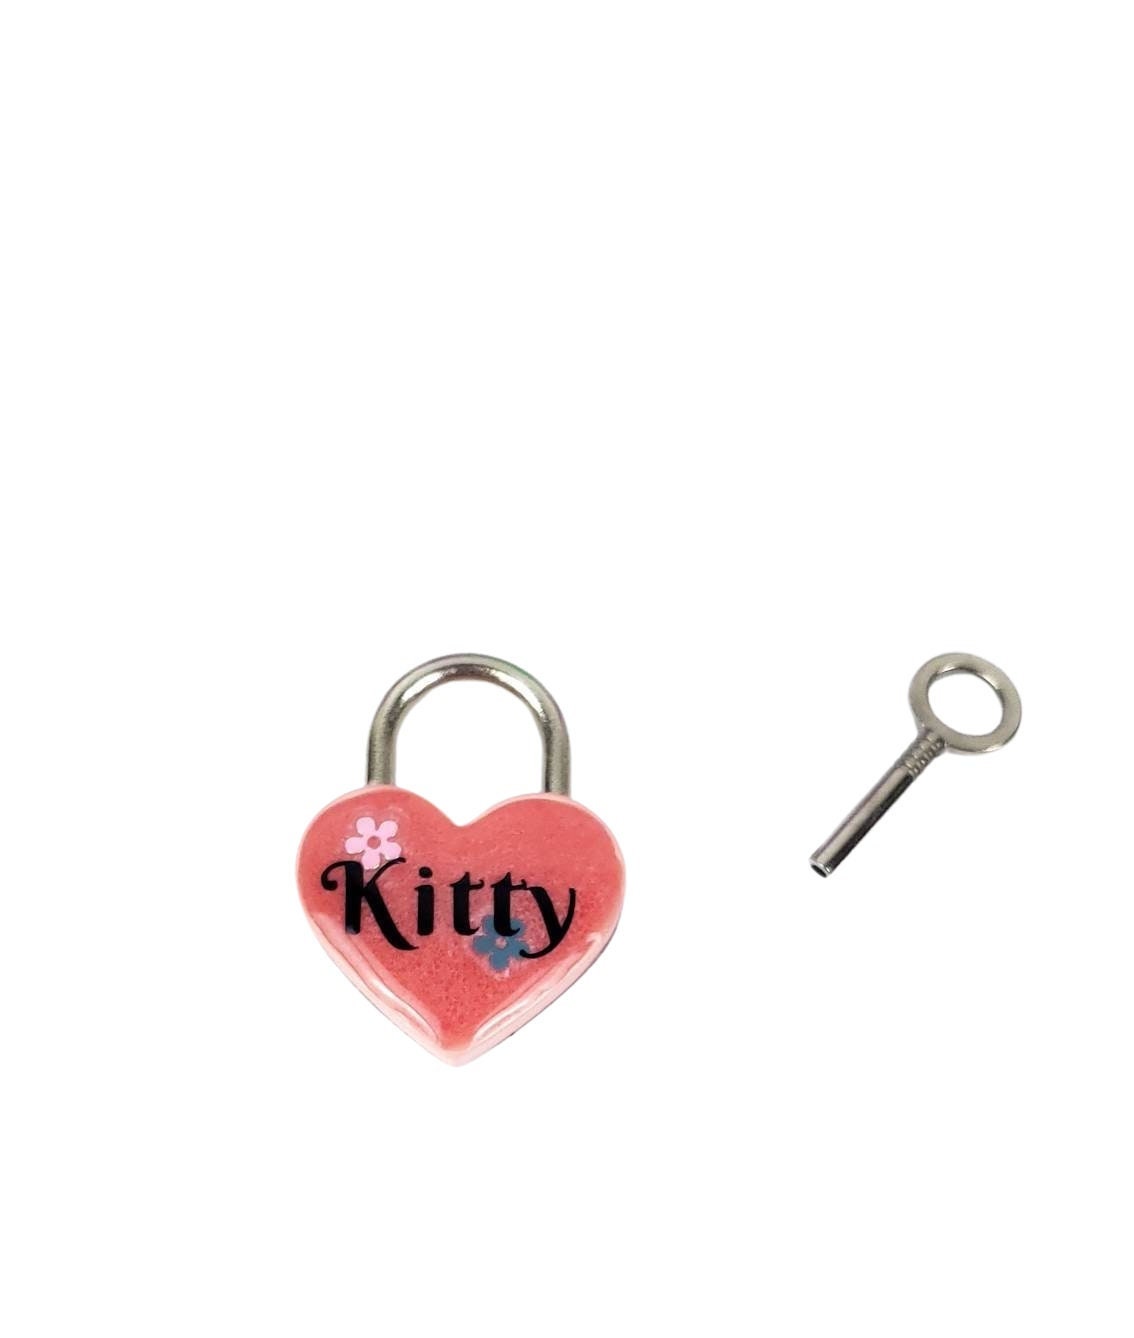 Kitty Heart Pad Lock, Resin Aluminum Heart Lock, Collar Closure Lock